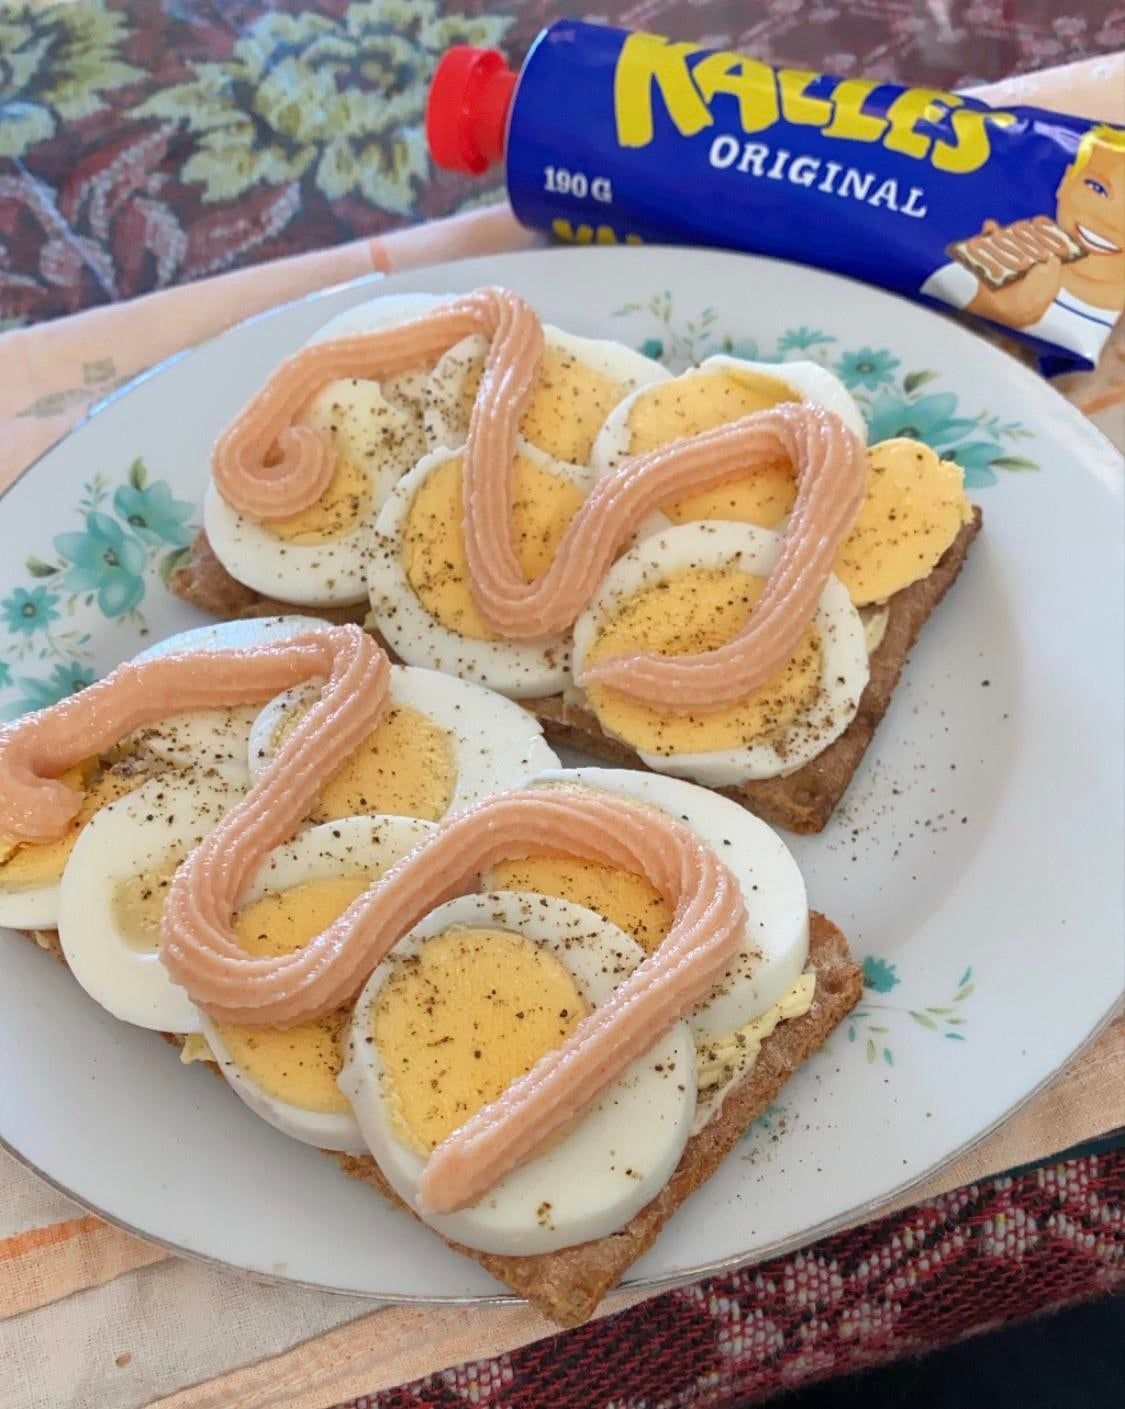 Kalles kaviar, шведський сніданок.